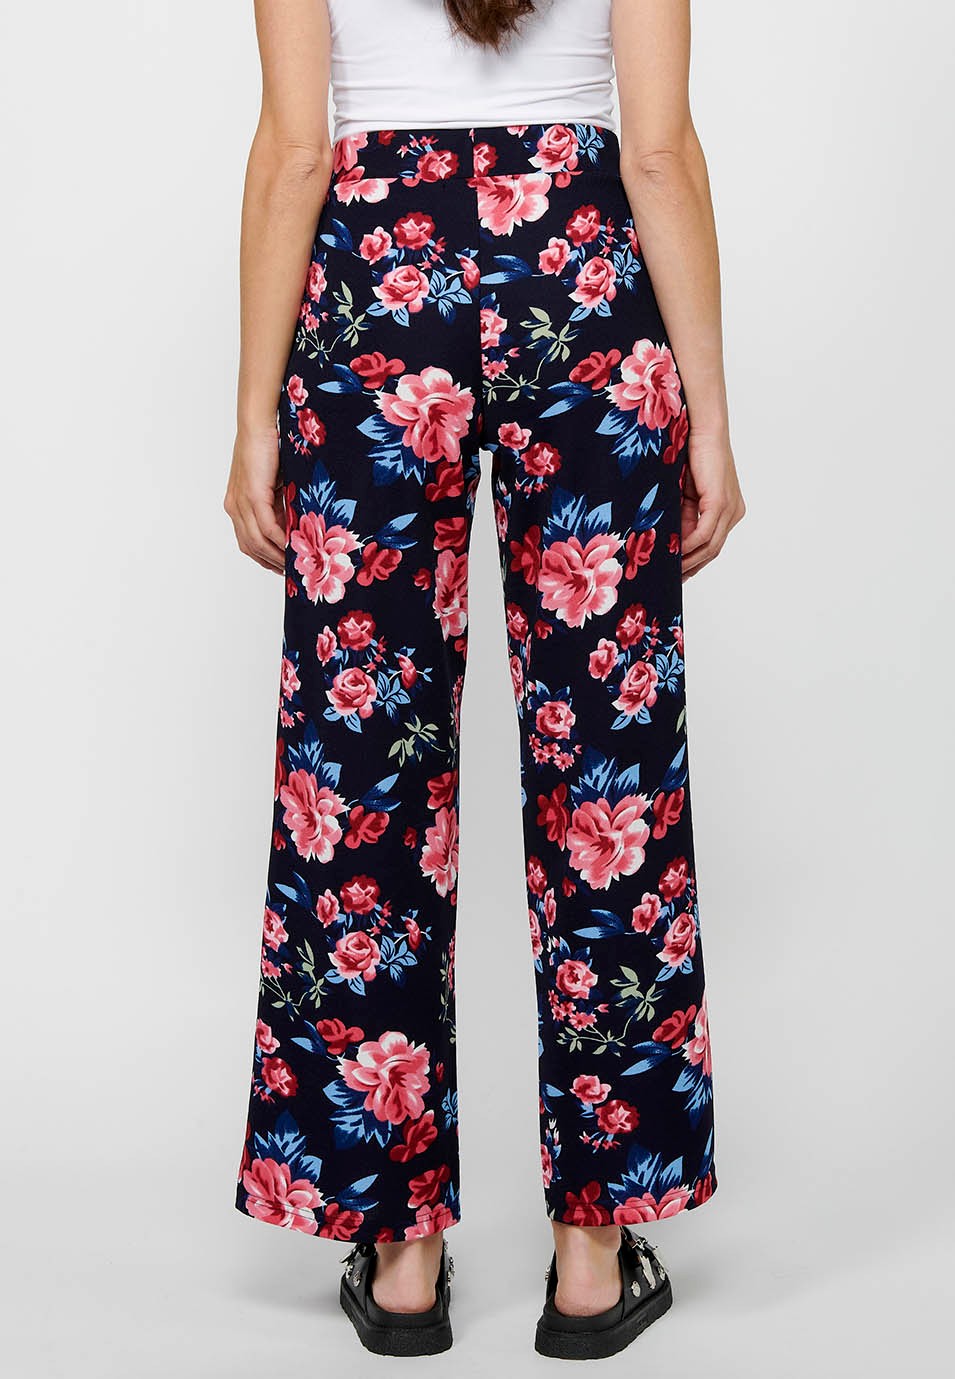 Pantalon long ample avec taille élastique caoutchoutée et imprimé floral Marine pour Femme 1